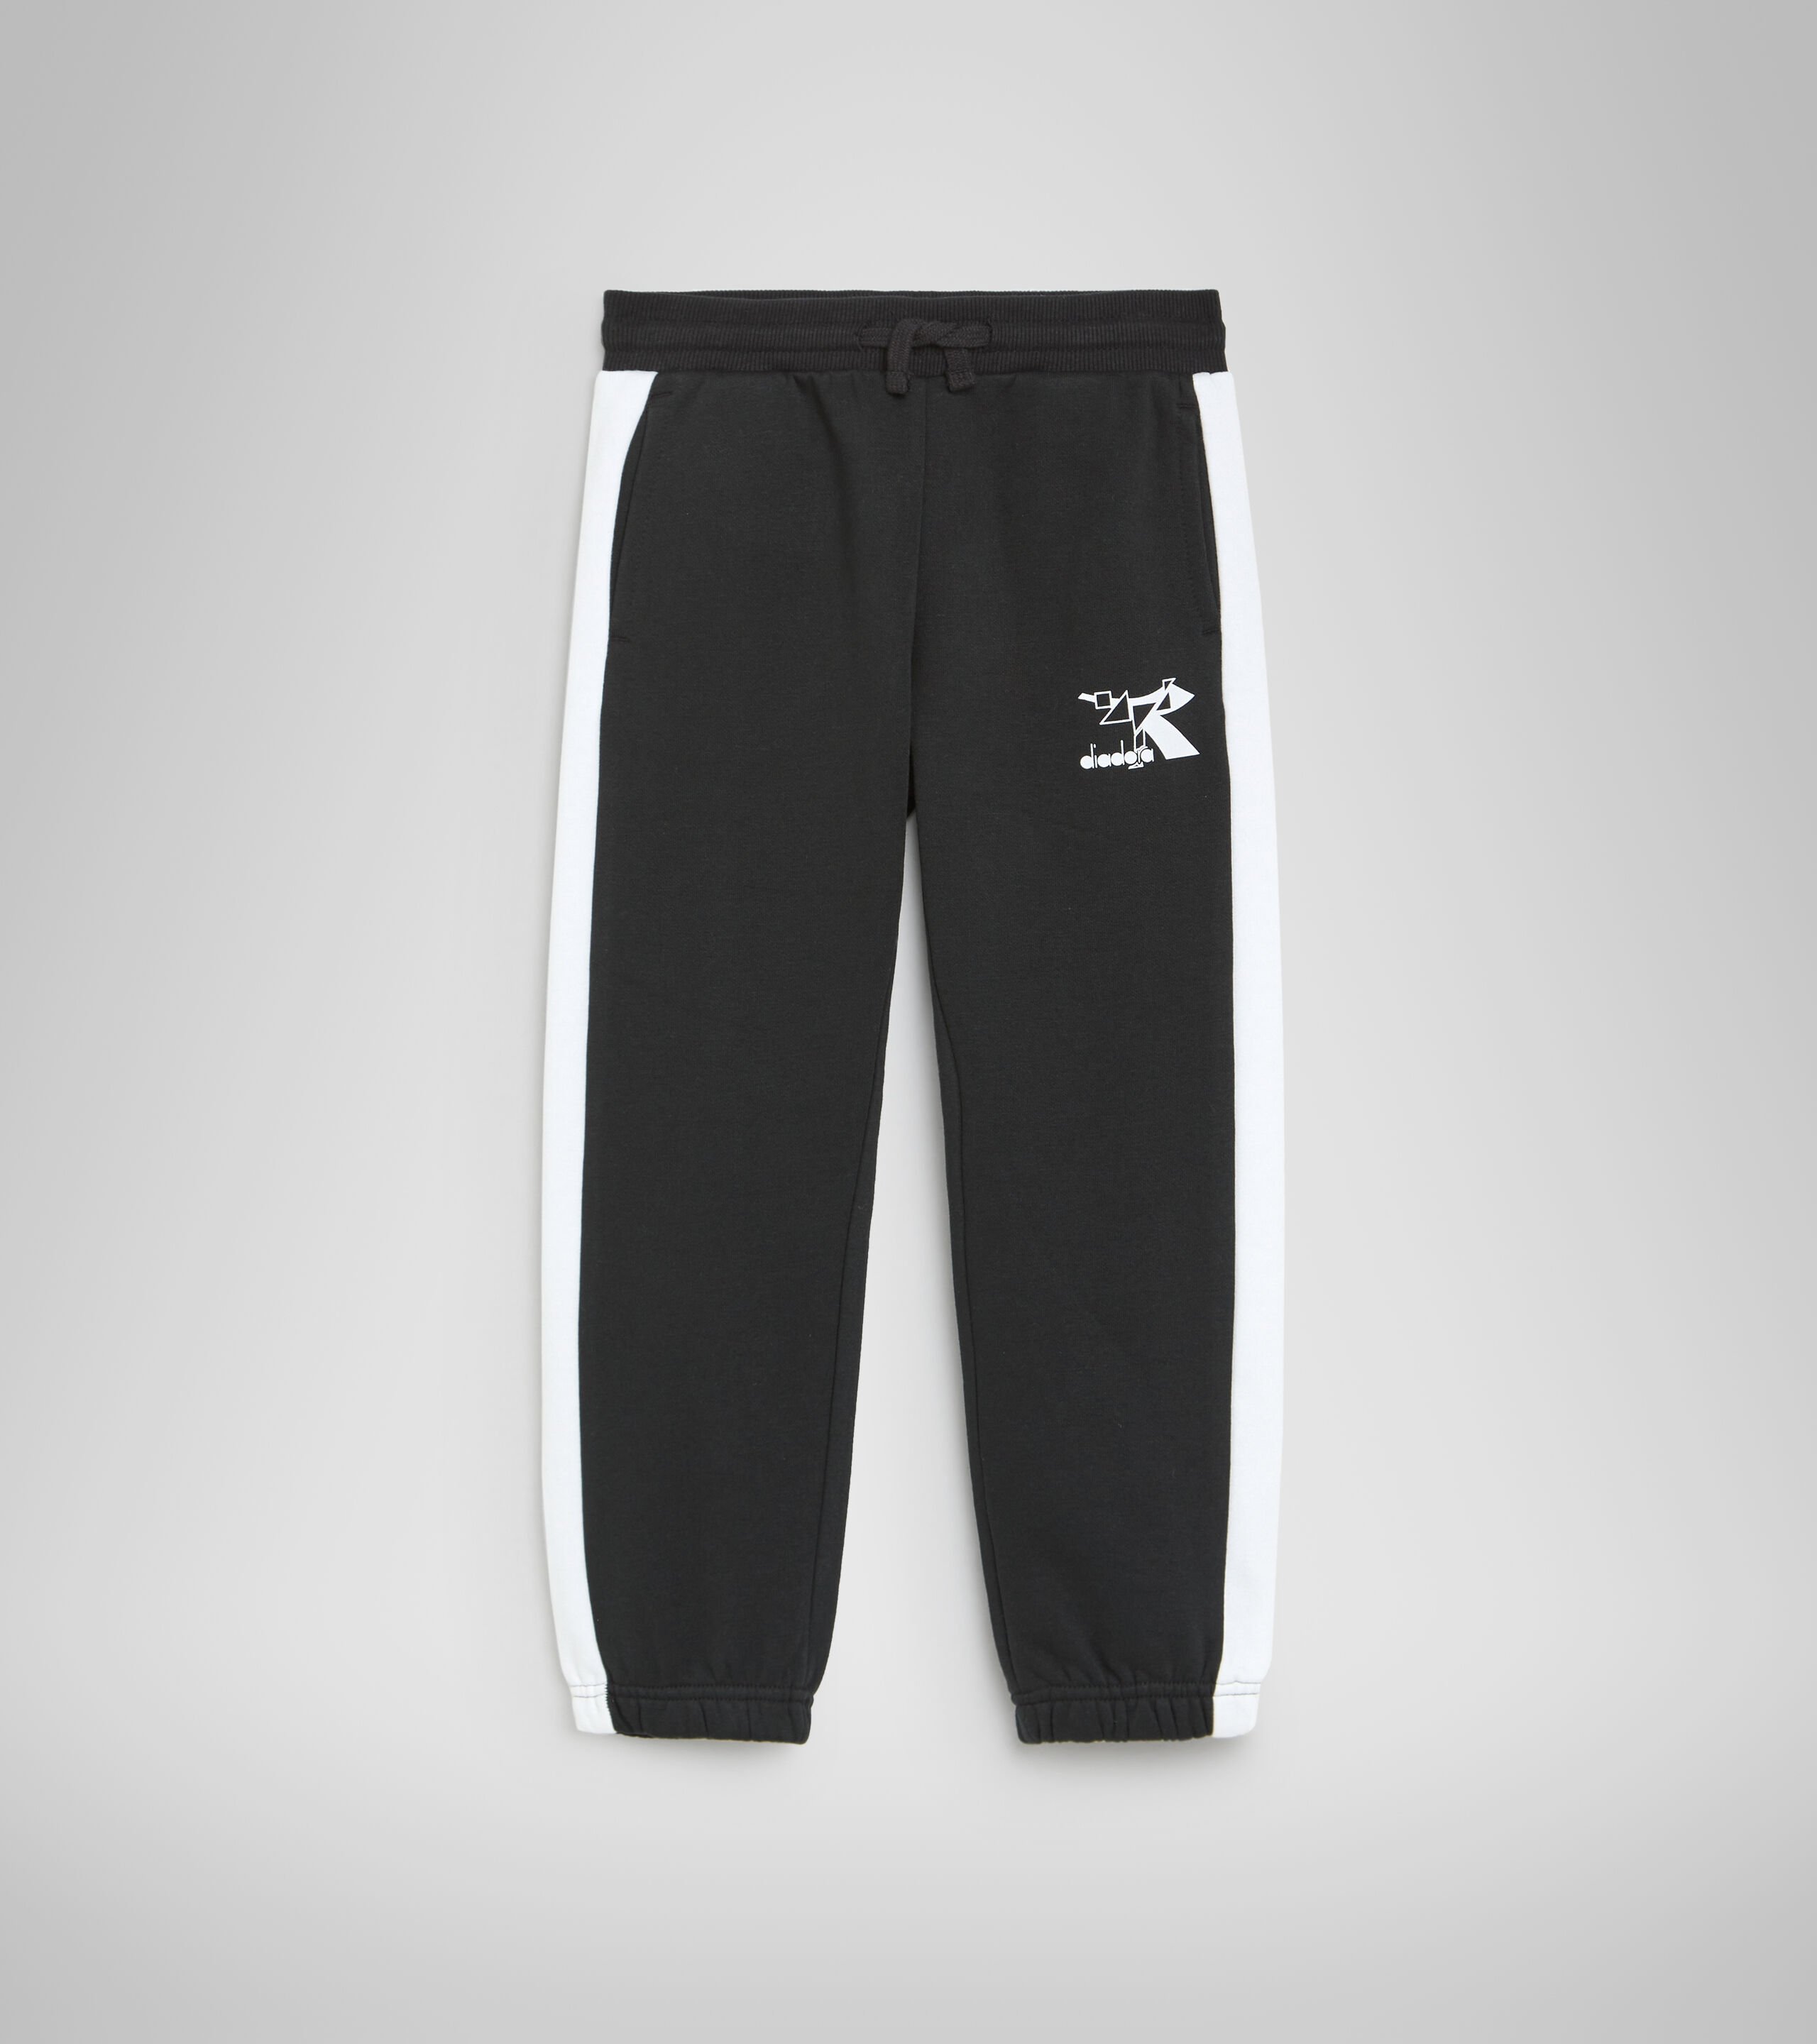 Buy Deepee Twister Knit Pants  Yoga Pants Kurti Pants Leisure Wear   Deepee Online Store